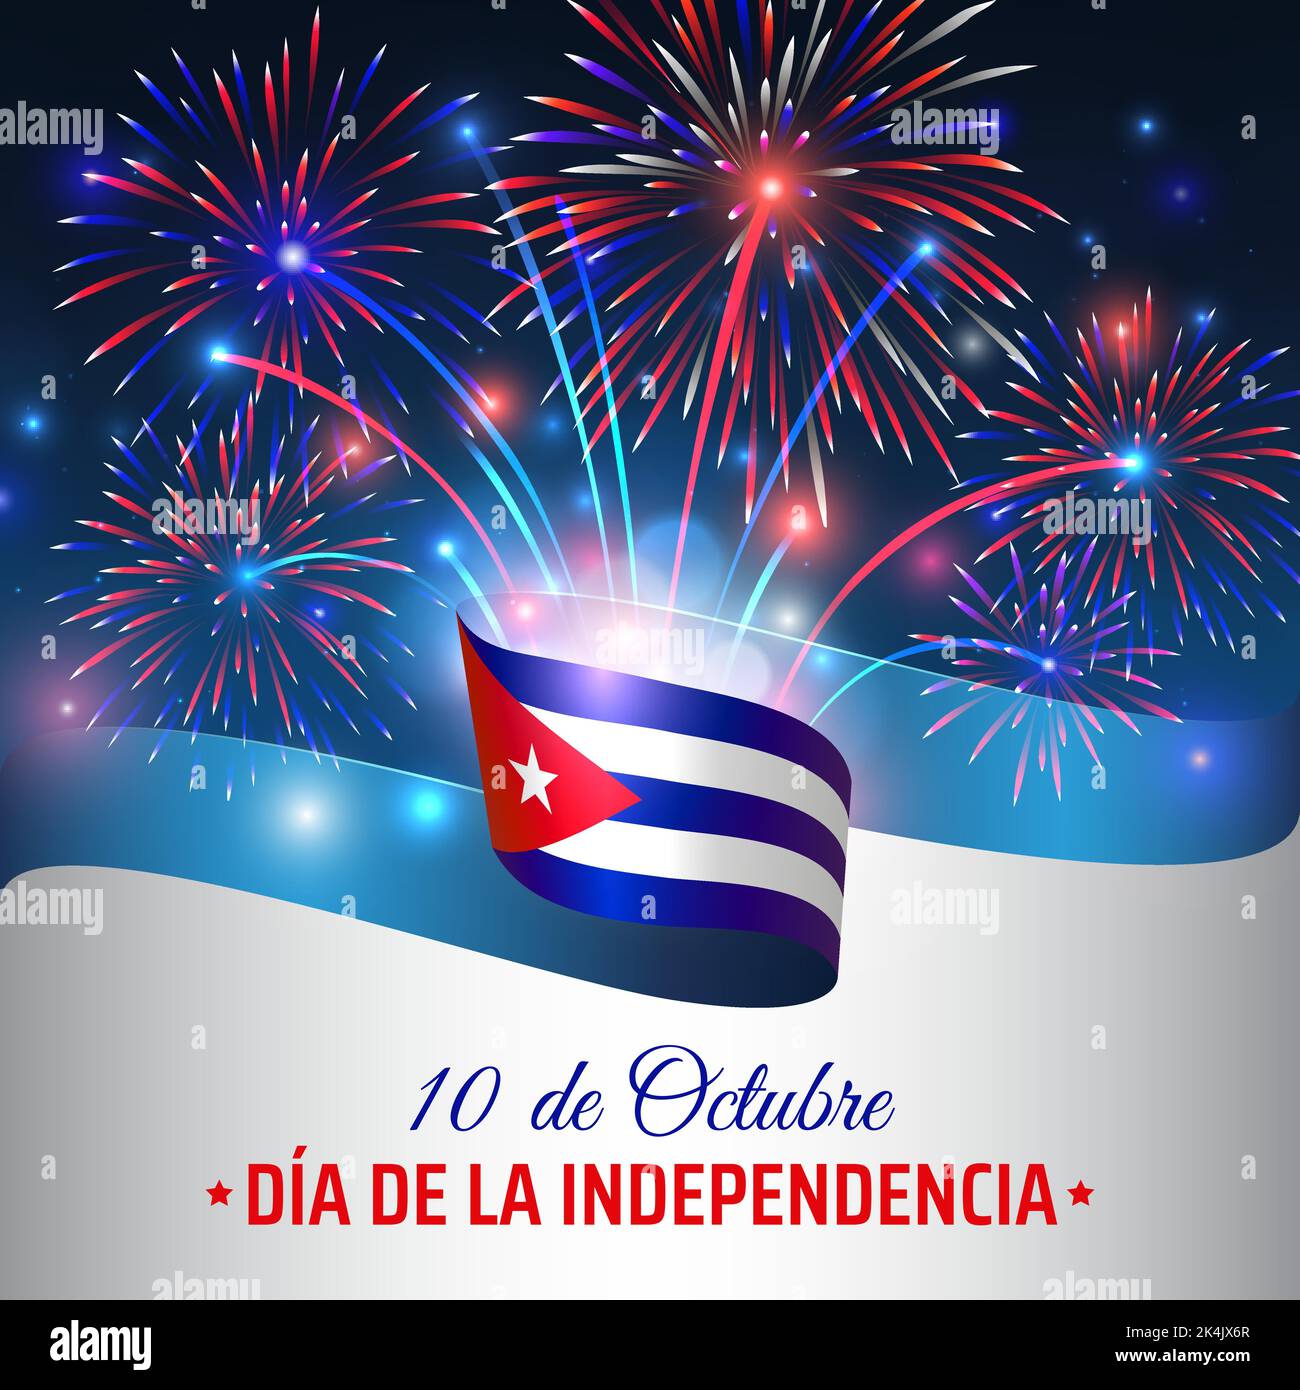 10 de octubre, día de la independencia cuba. Bandera cubana ondulada y coloridos fuegos artificiales sobre fondo azul cielo. Fiesta nacional en cuba. Tarjeta de felicitación. Vector Ilustración del Vector